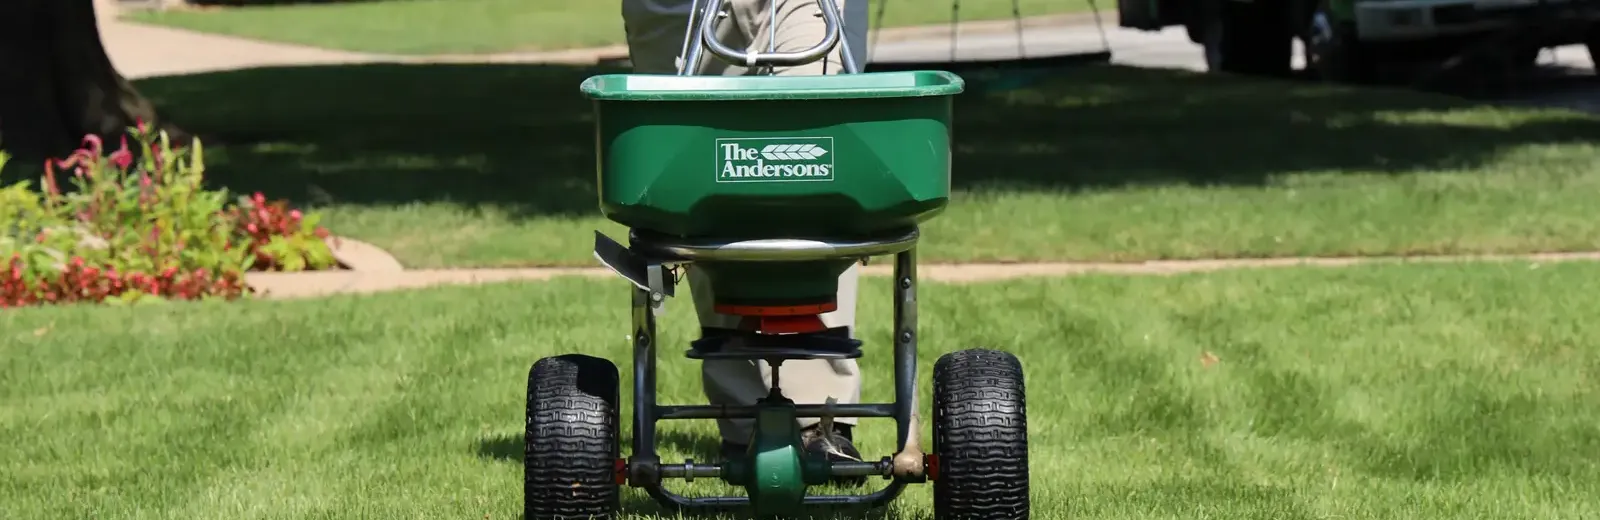 nutri-green service technician fertilizing on lawn